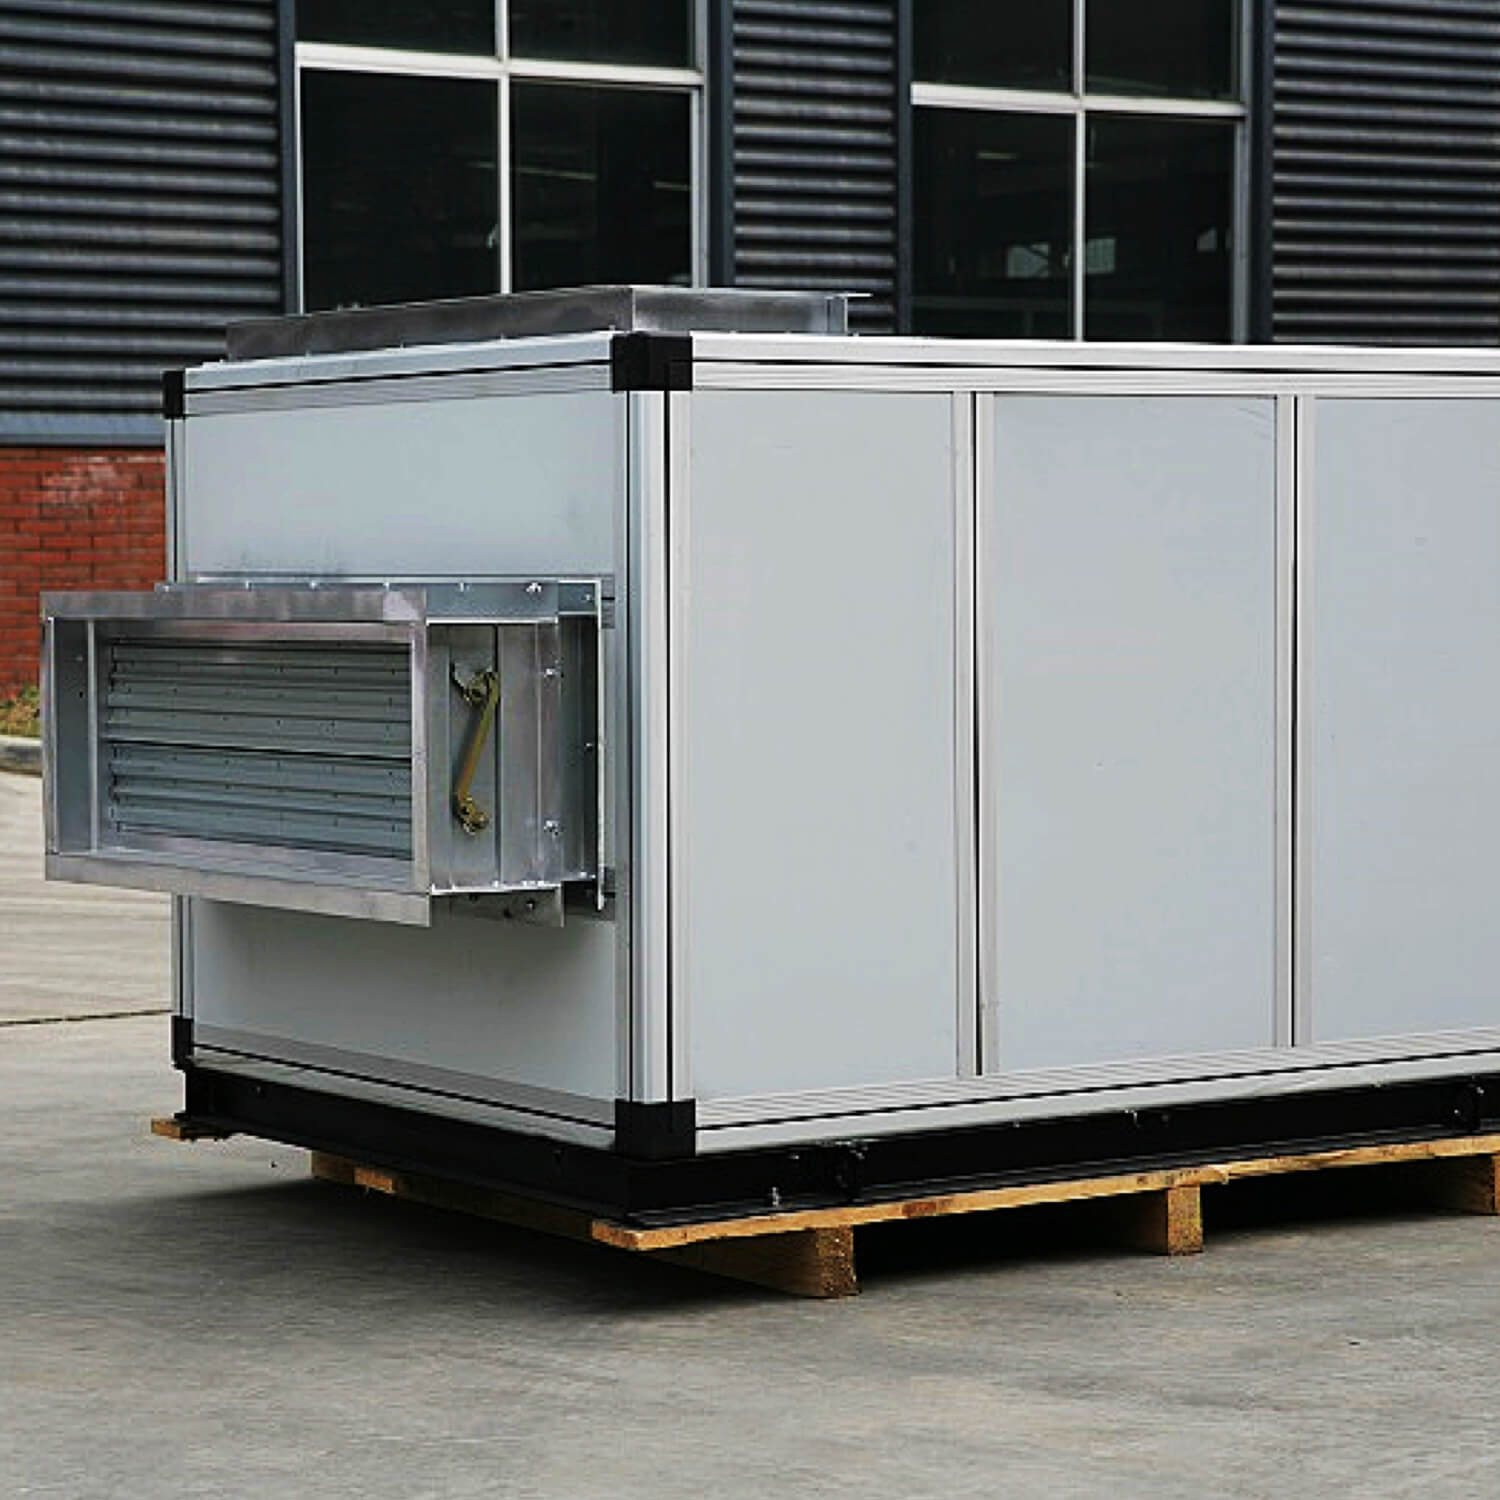 HVAC-Systeme, die kombinierte Lüftungsgeräte herstellen